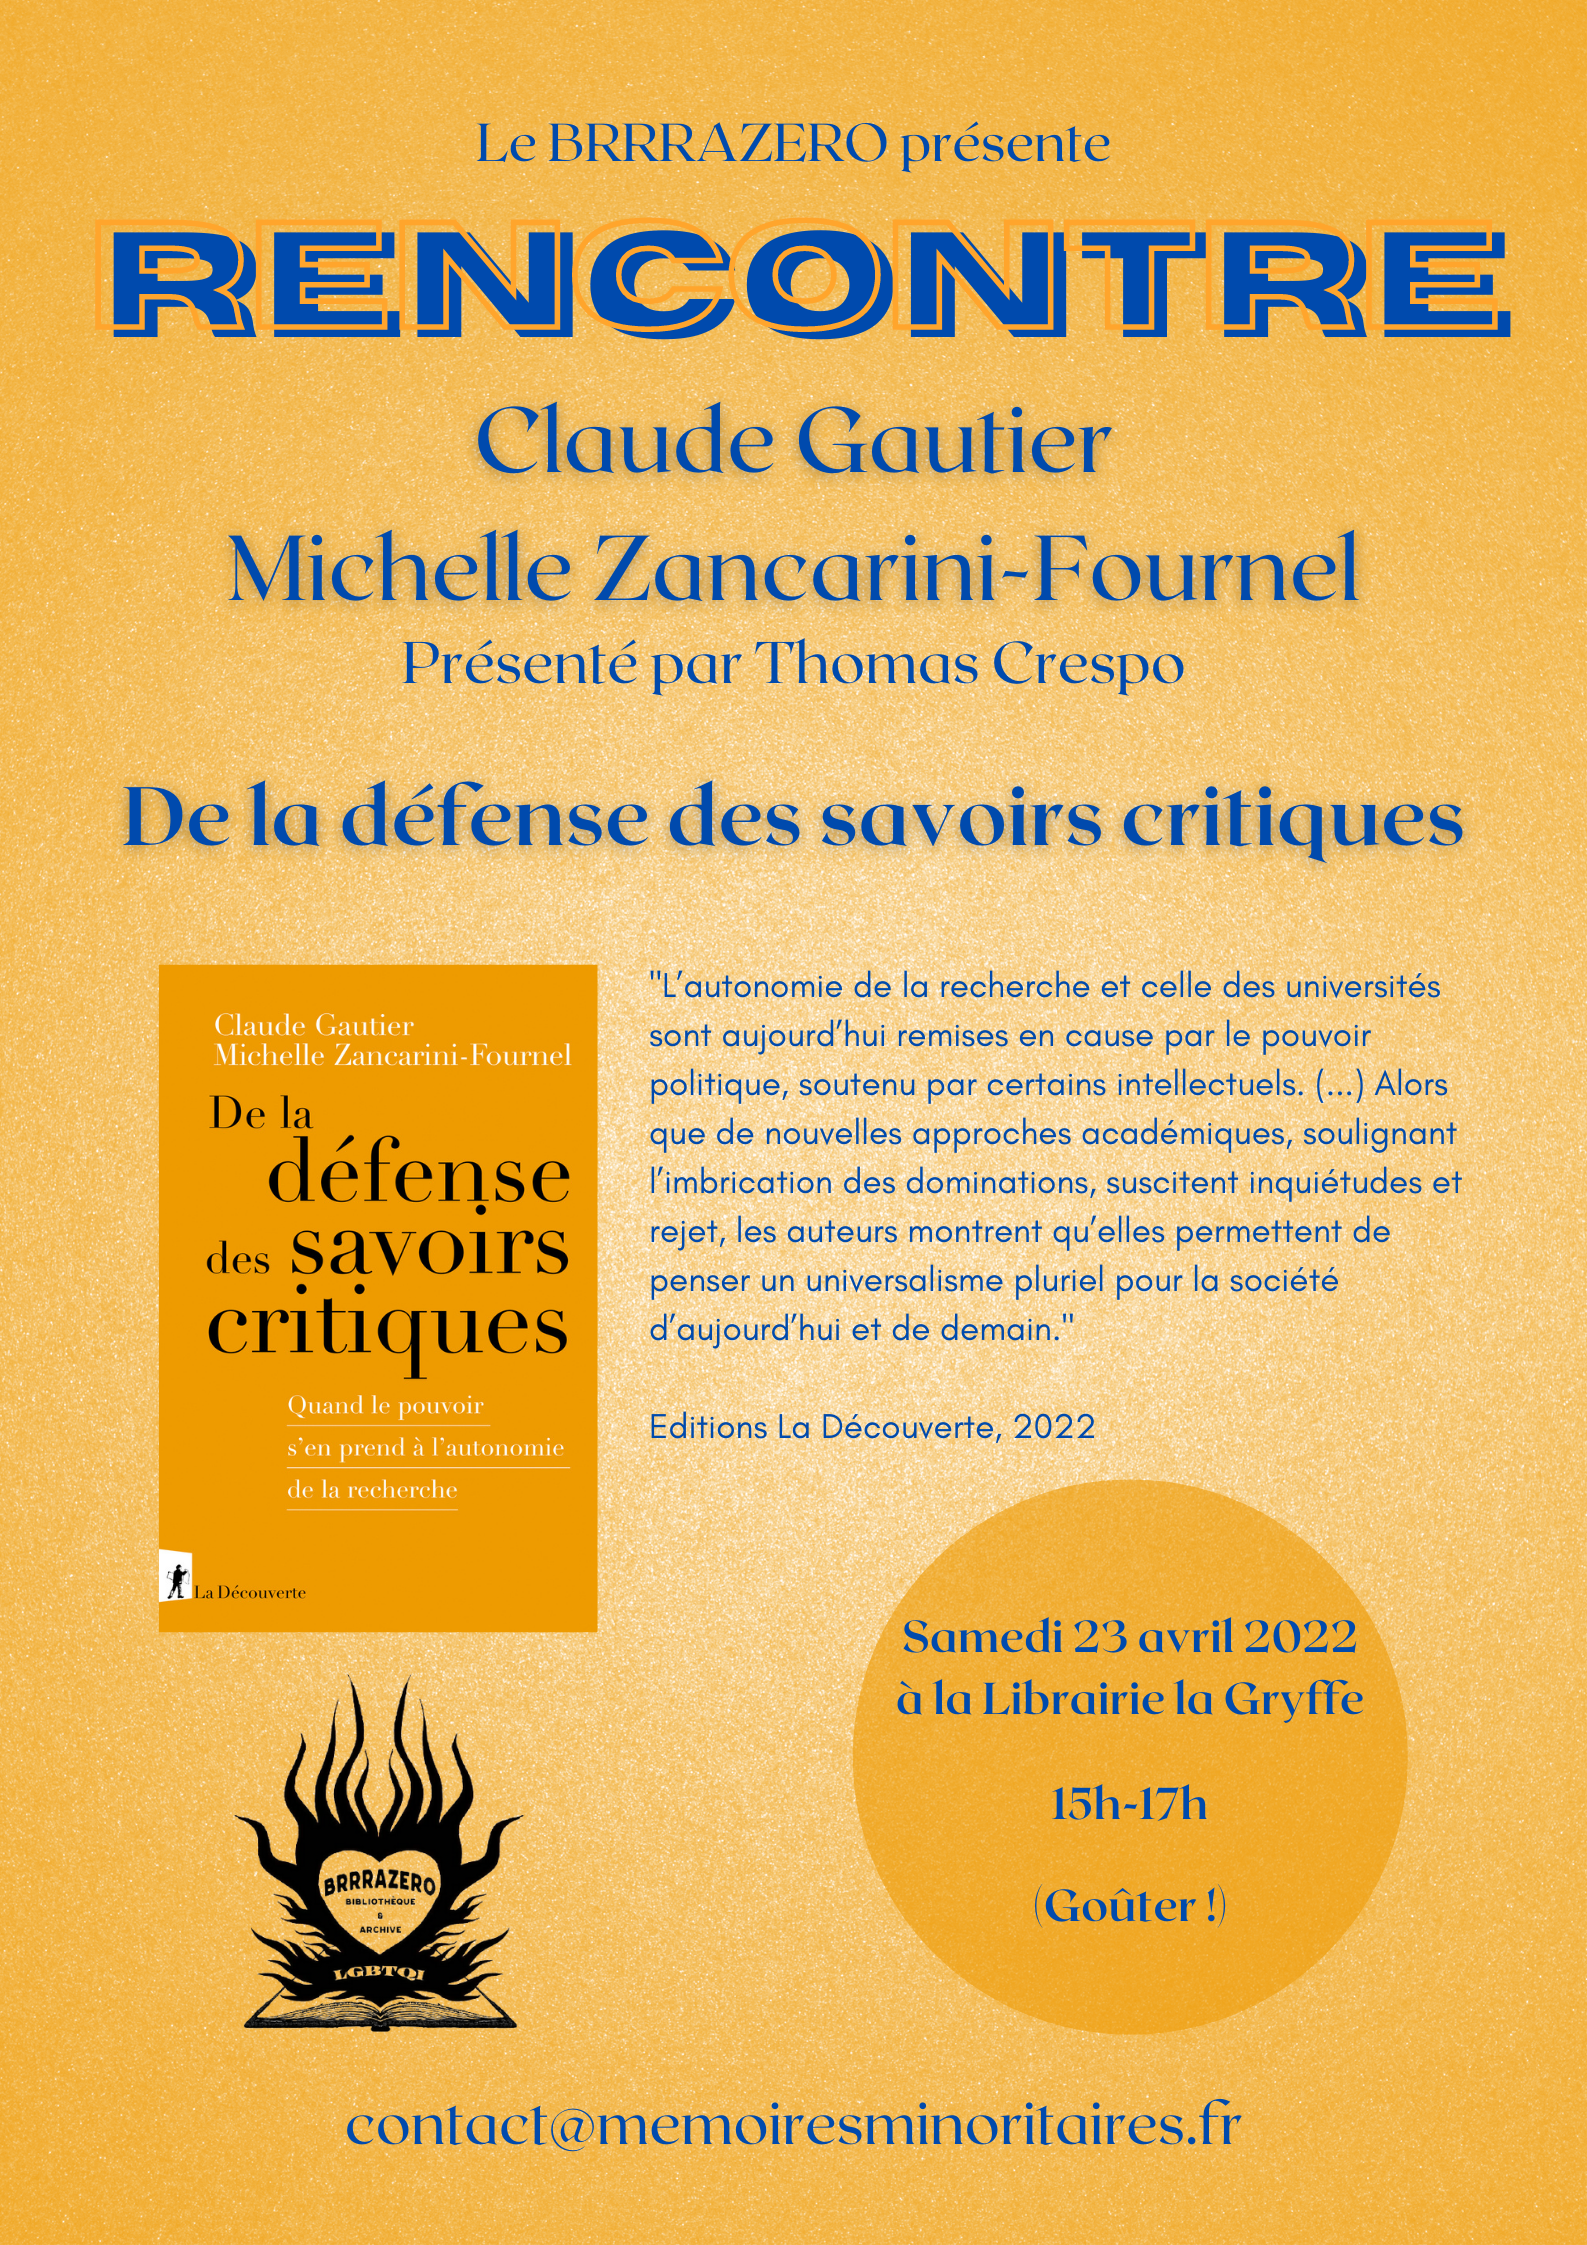 23/04 – Claude Gautier et Michelle Zancarini-Fournel